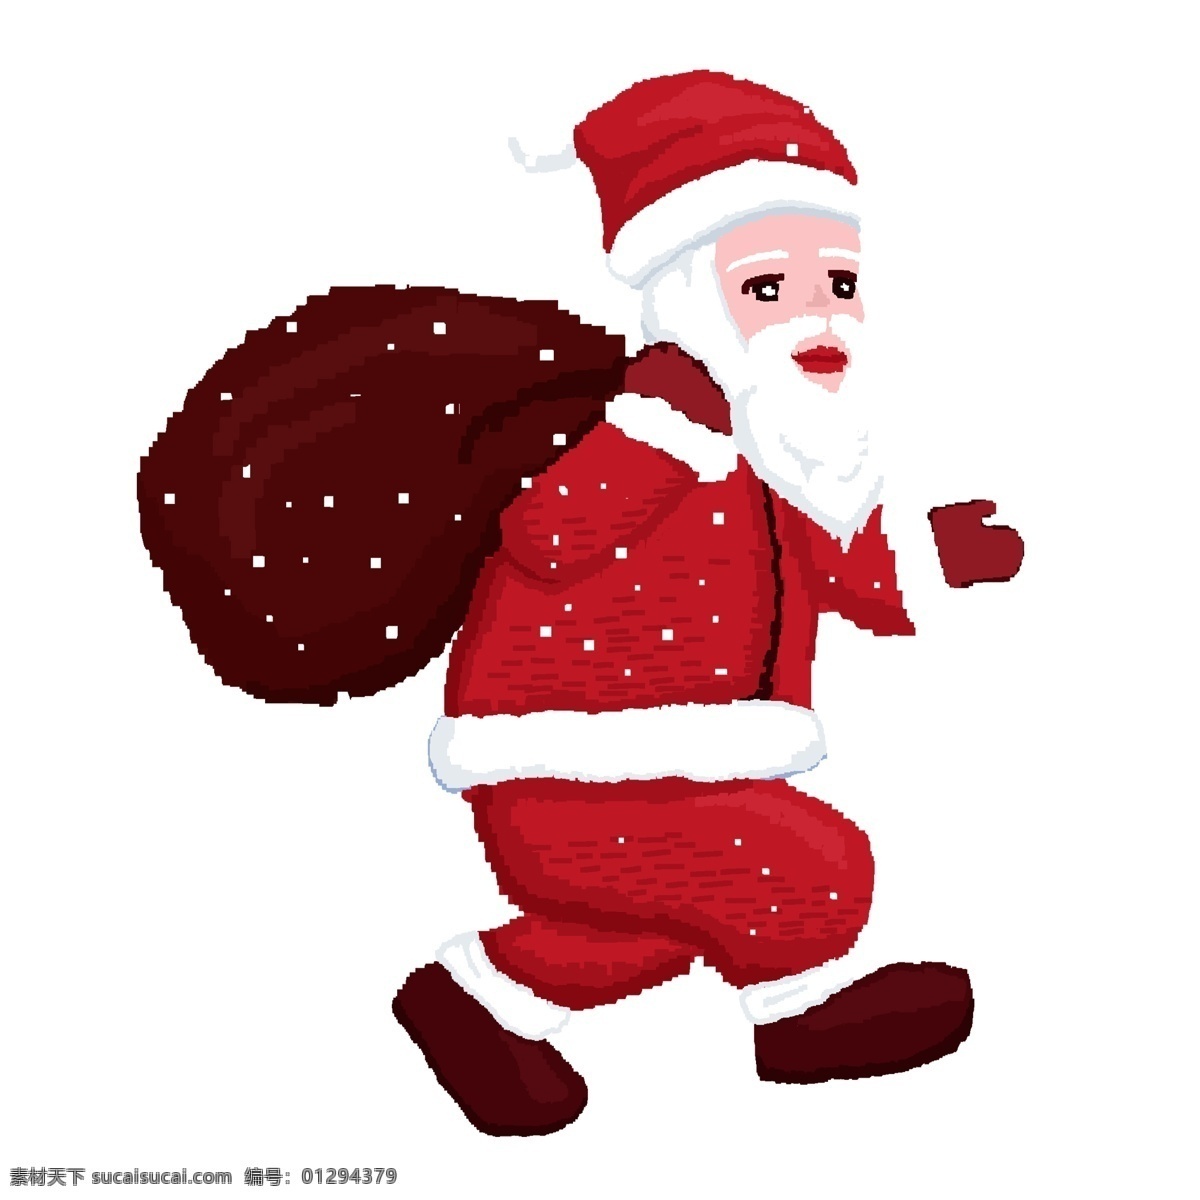 背着 麻袋 圣诞老人 像素 化 商用 元素 卡通 大雪 冬季 圣诞节 手绘 节日元素 复古设计 像素化设计